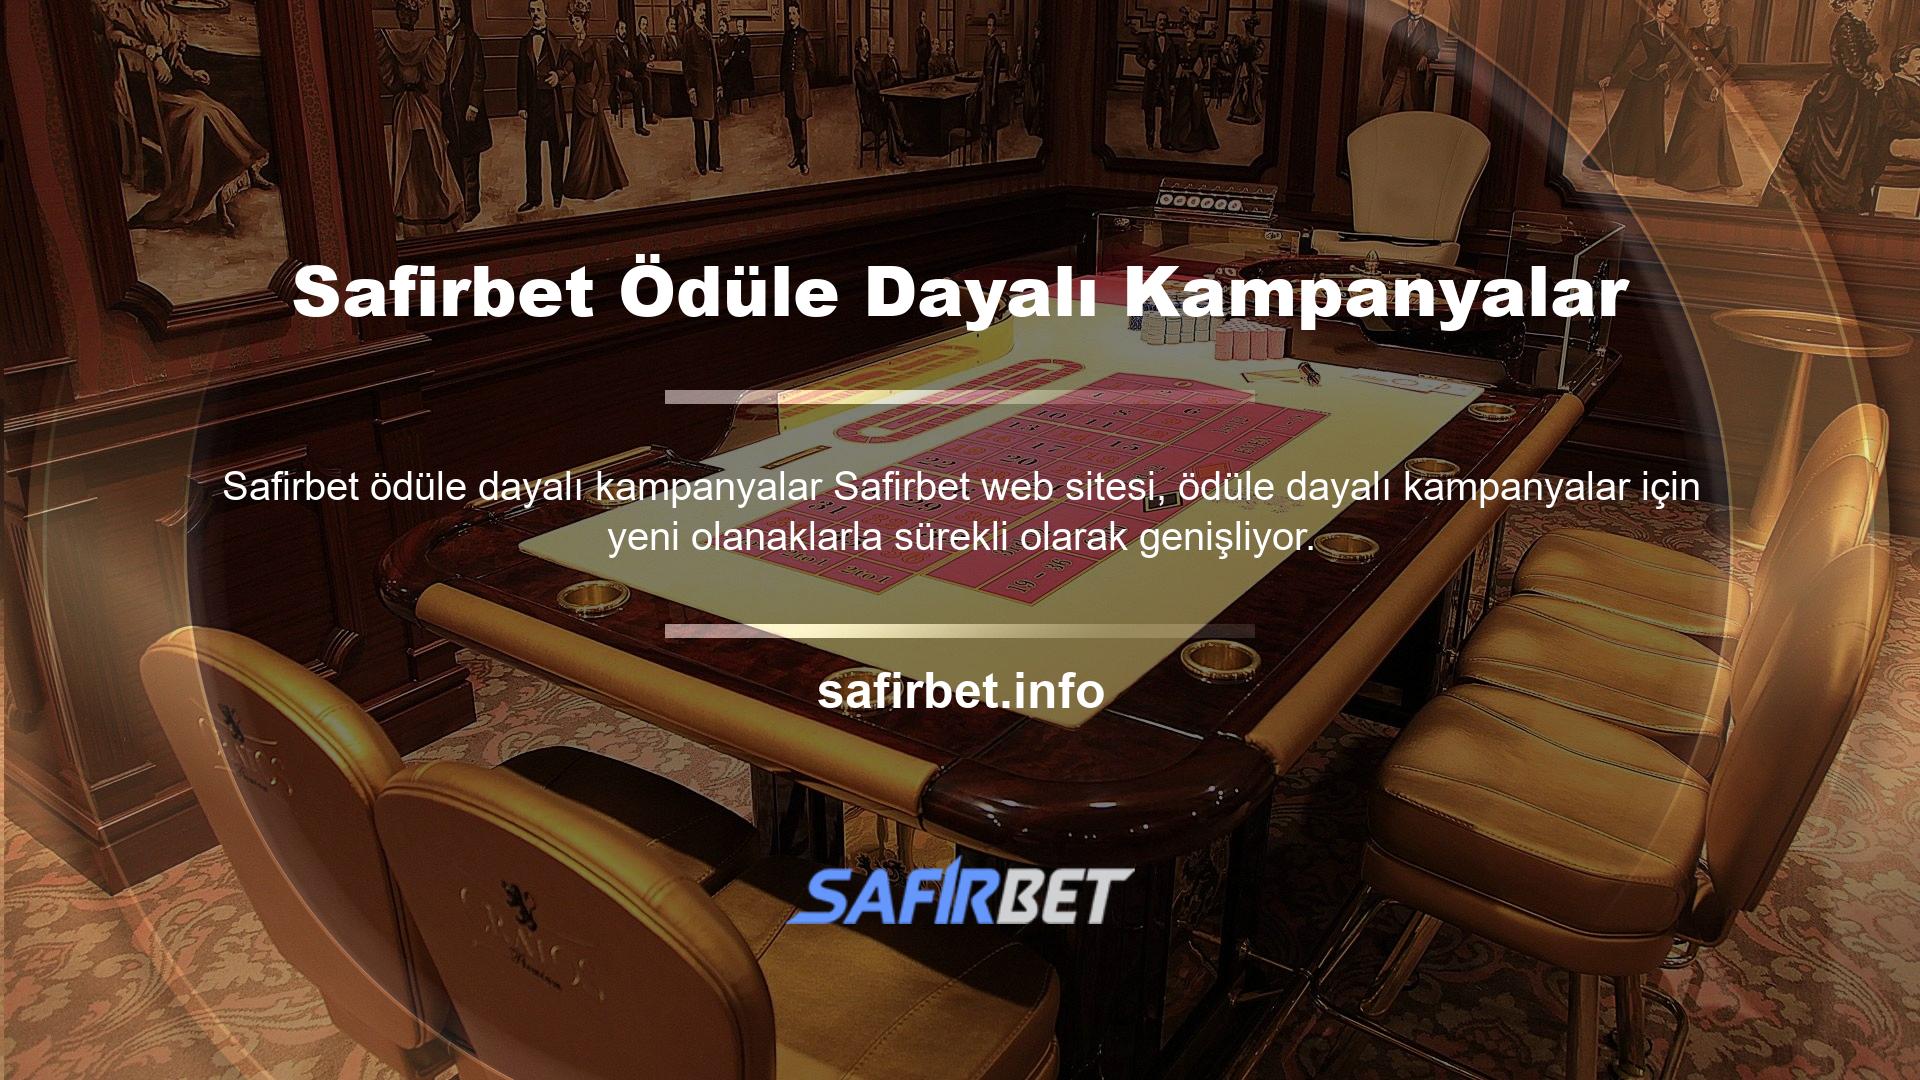 Çevrimiçi Safirbet sunan birçok Türk web sitesi, oyunu oynamak için hala aynı yöntemleri kullanıyor